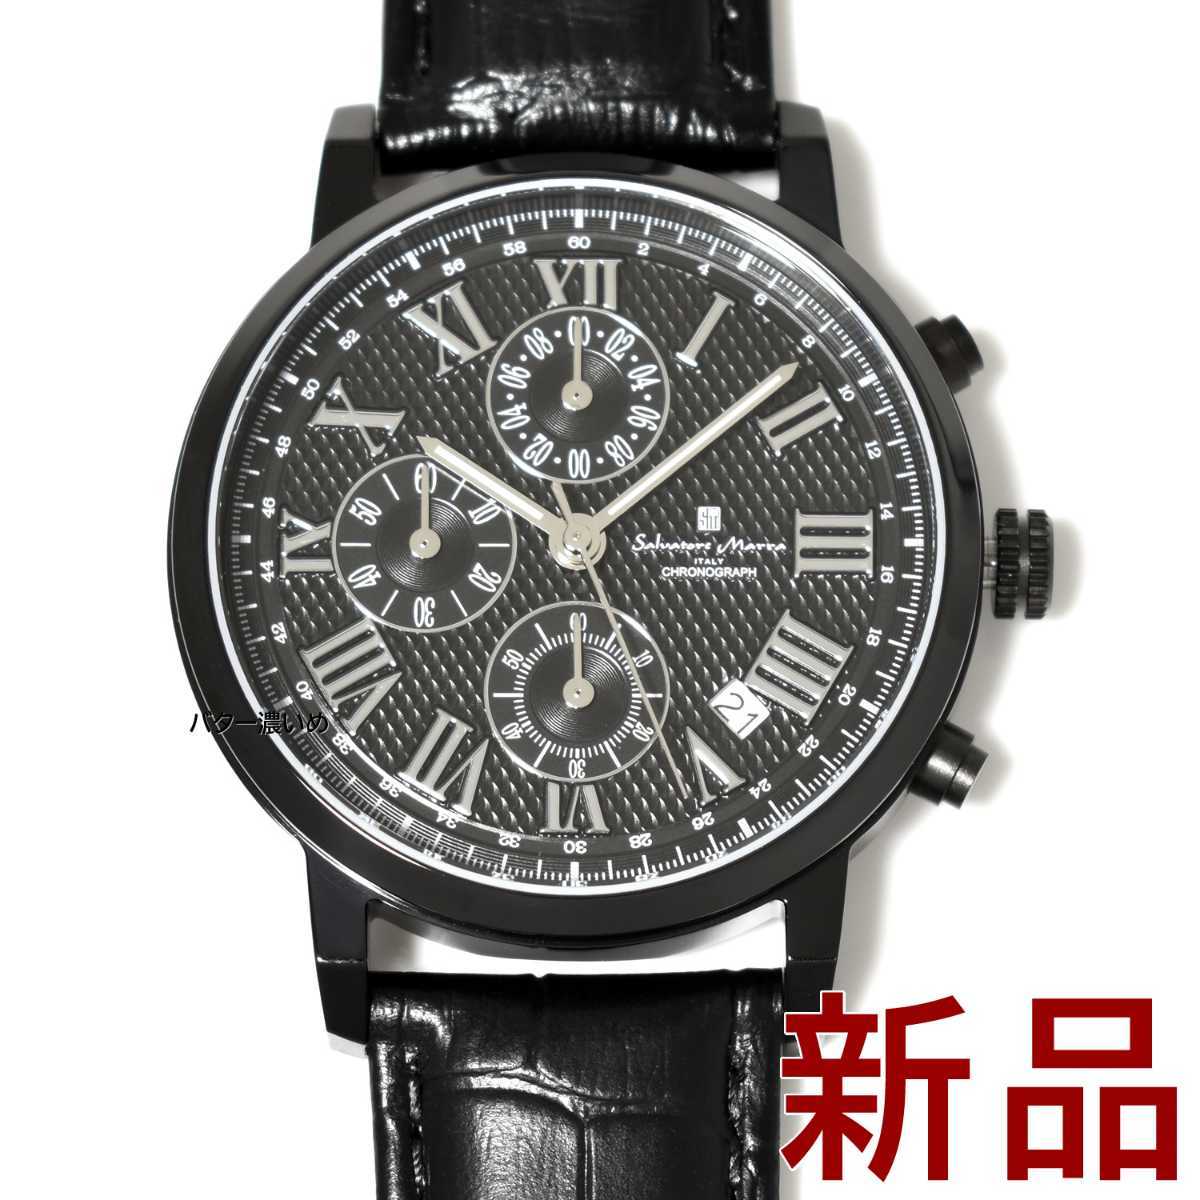 新品 サルバトーレマーラ メンズ 腕時計 40mmフェイス ブラック×ブラック 革ベルト レザーベルト クオーツ クロノグラフ Salvatore Marra